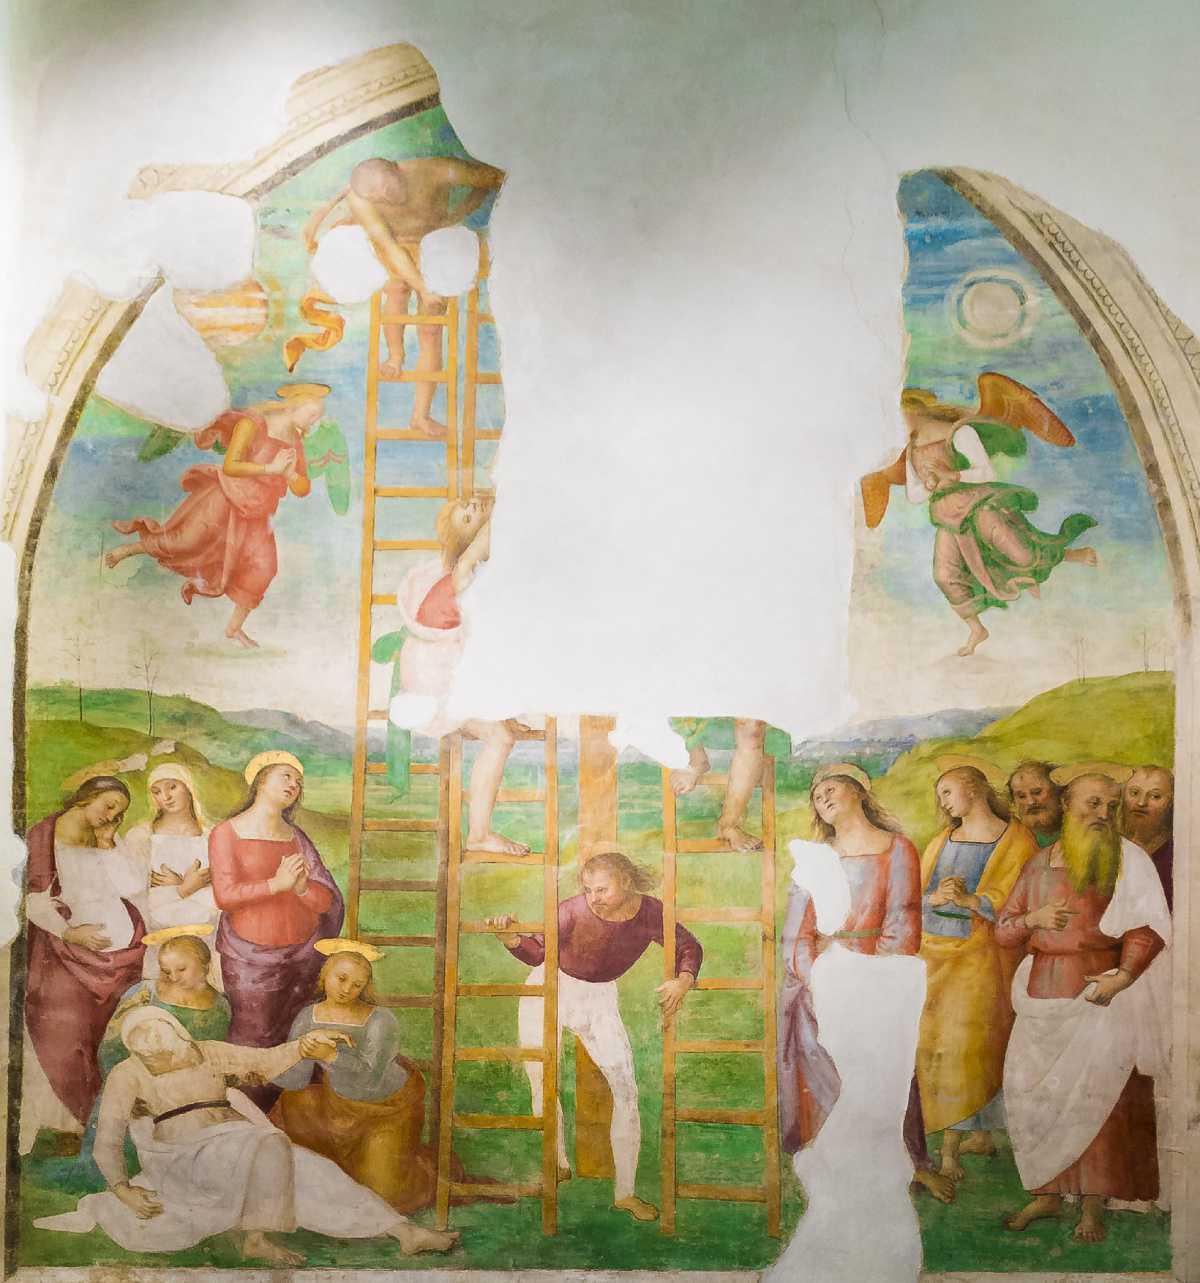 Nella patria del Perugino, il “Divin Pittore”.